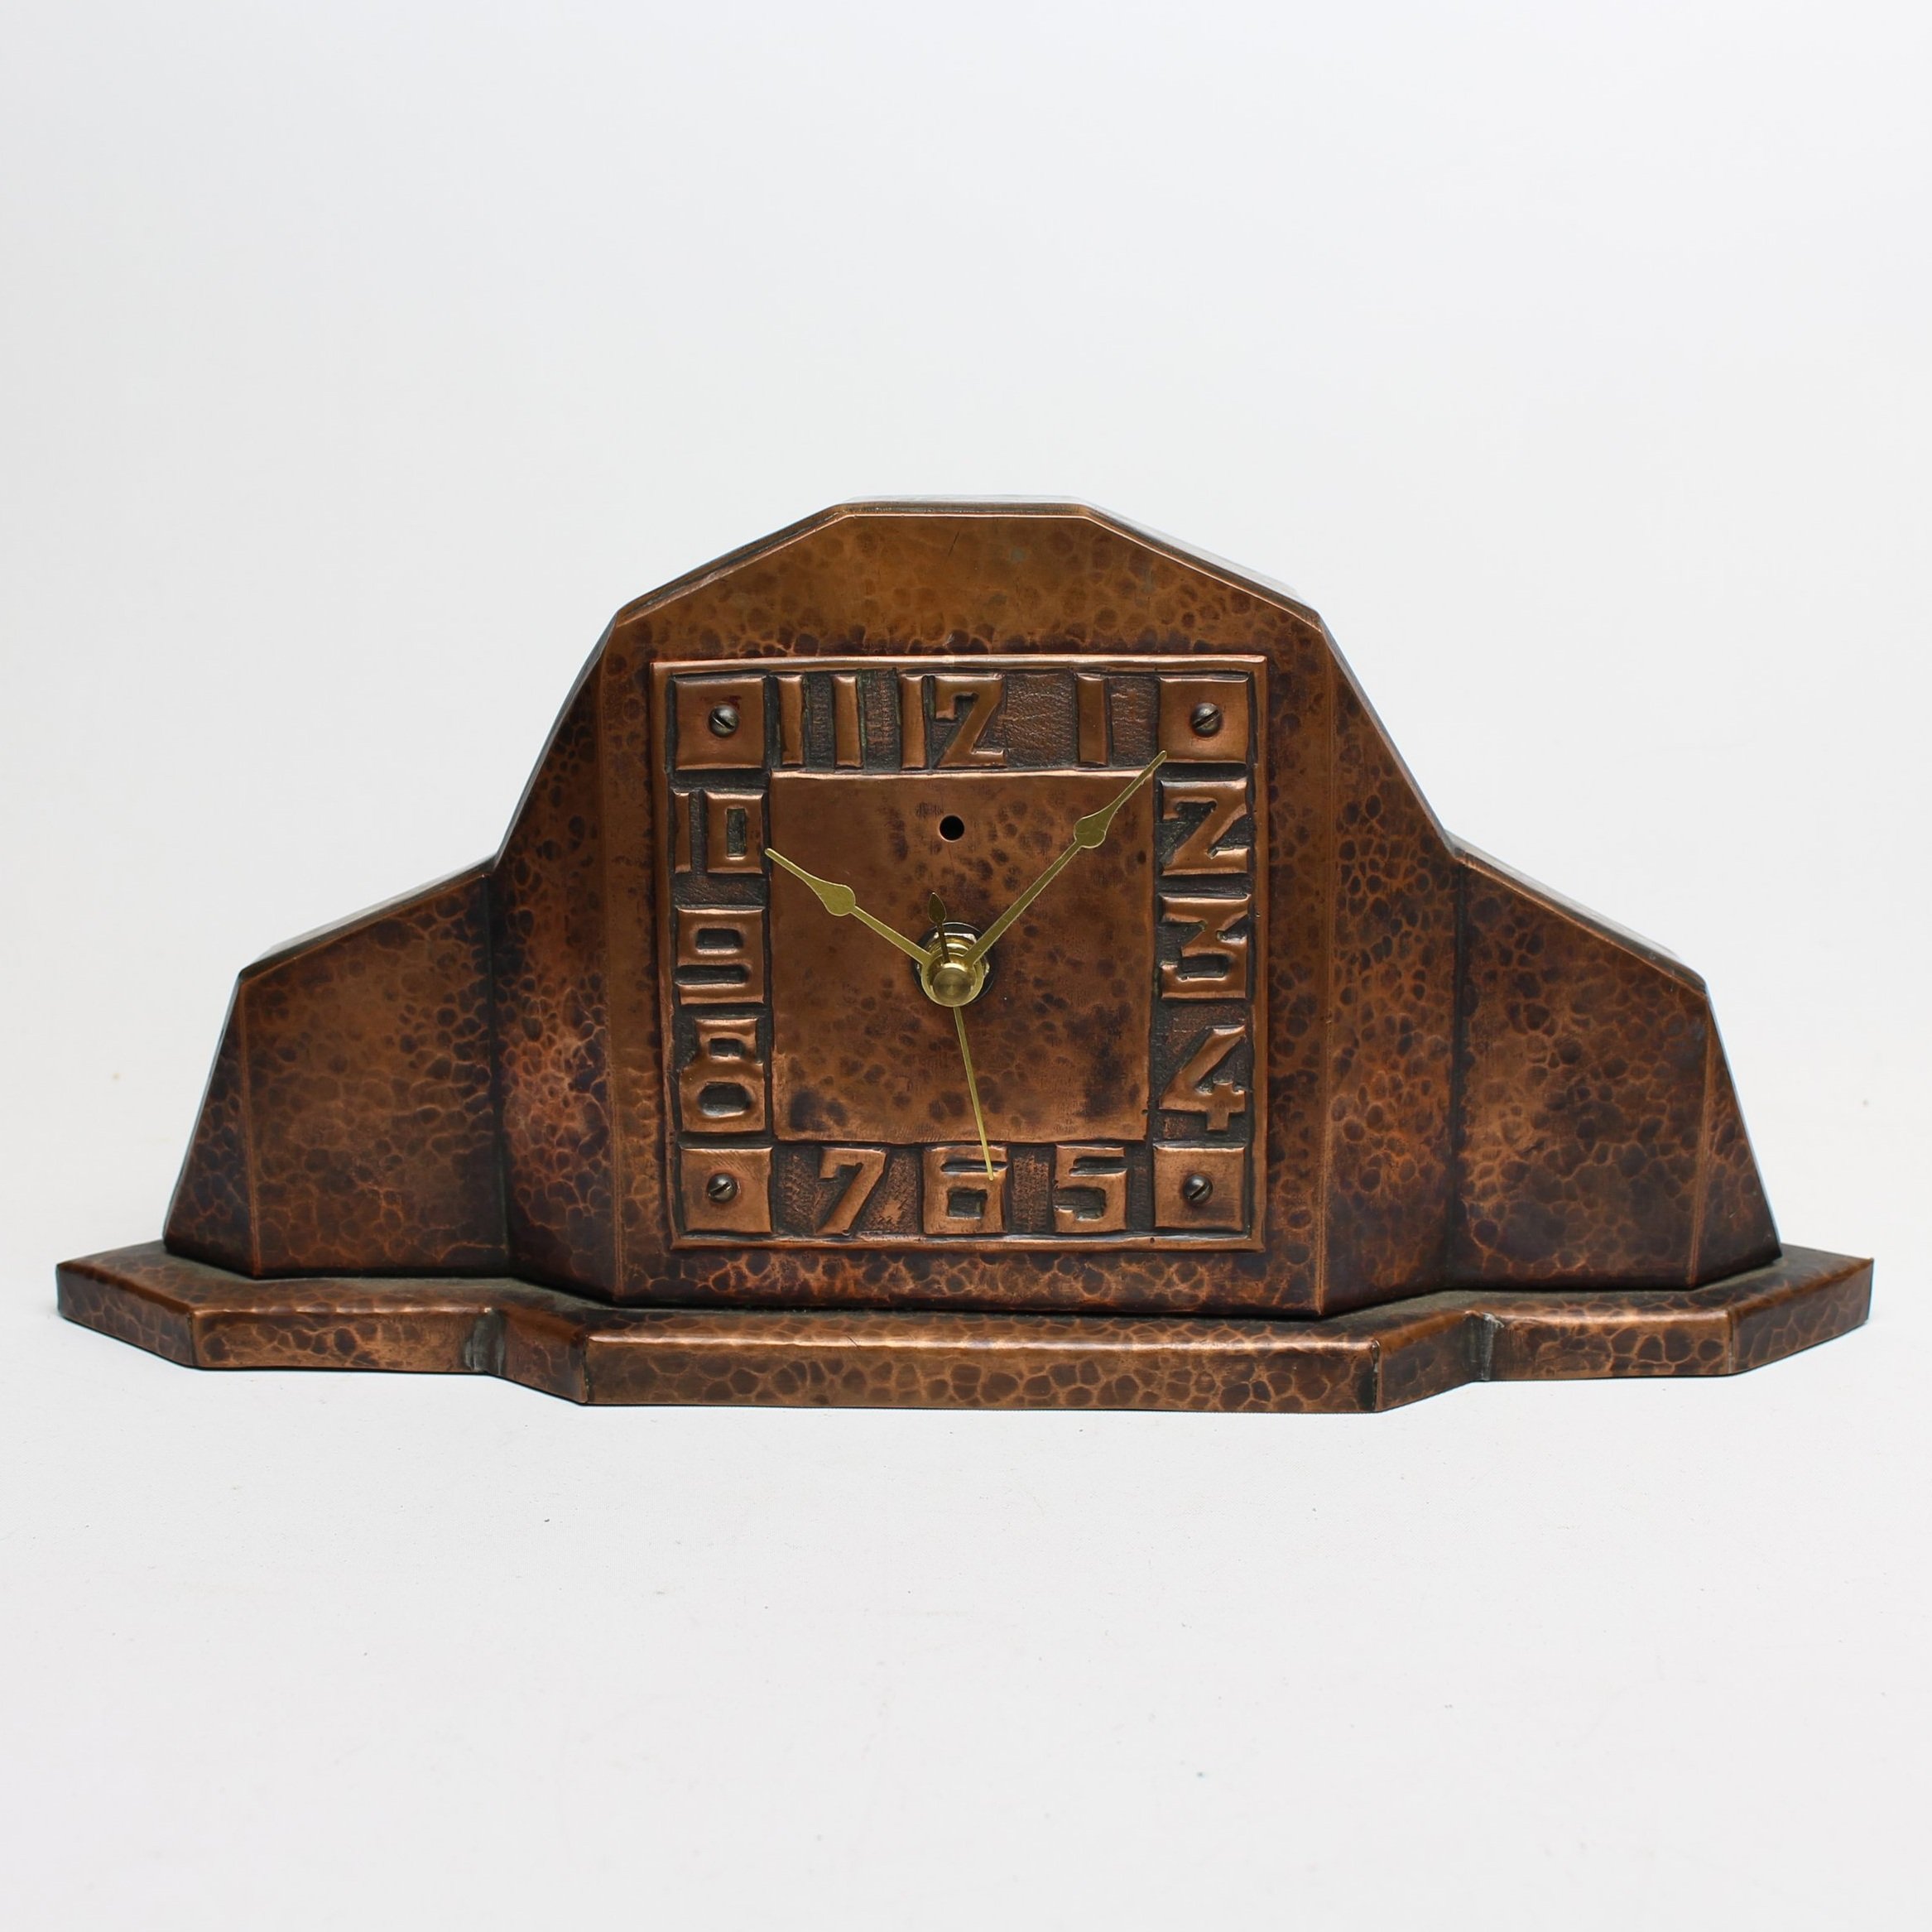 SOLD, Hammered Copper Mantle Clock